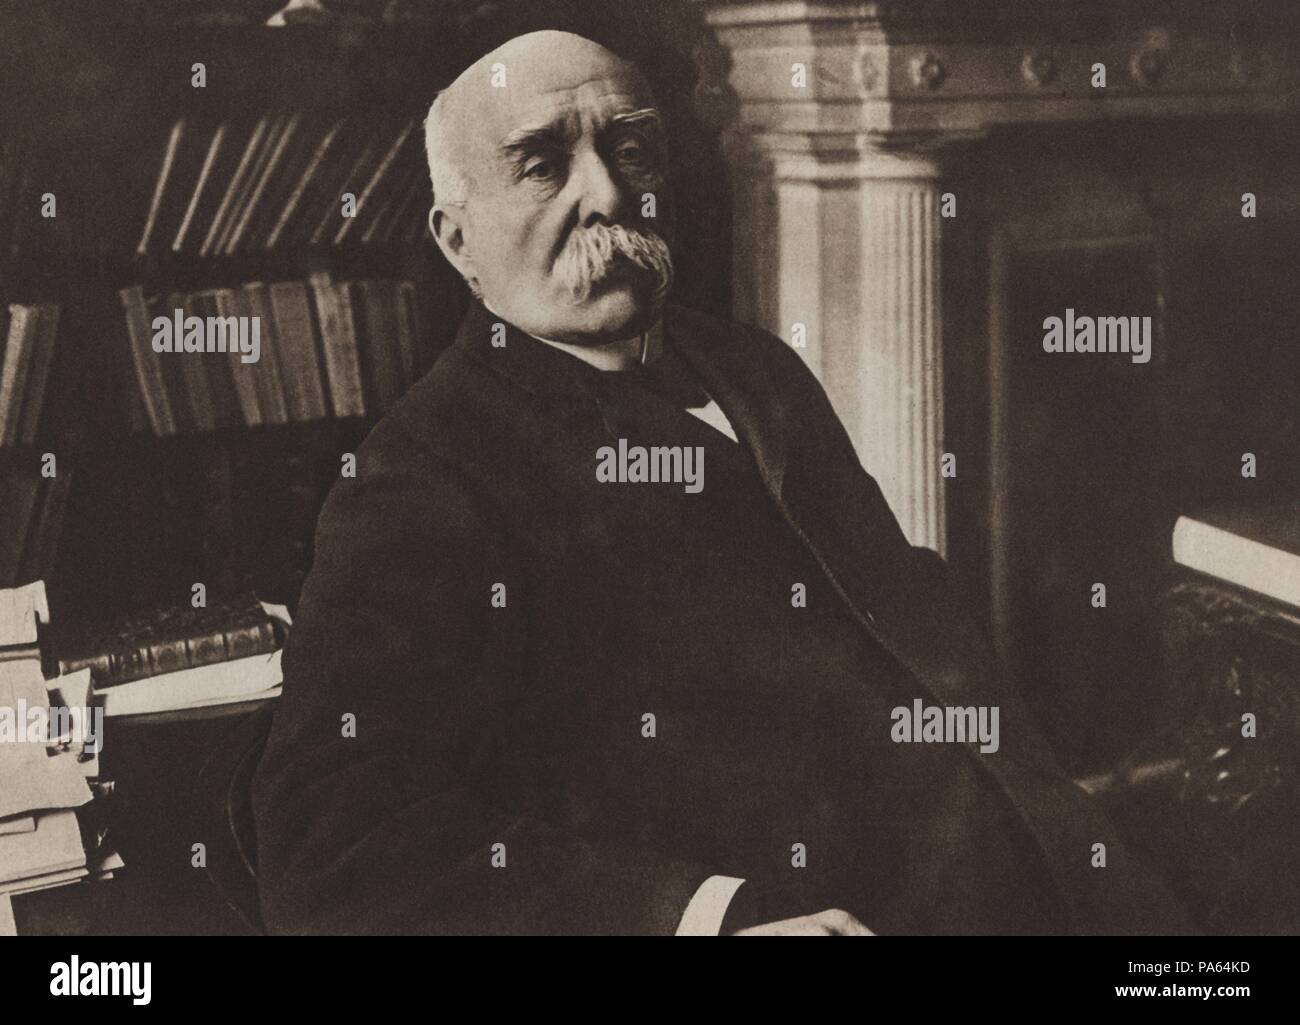 Primera guerra mundial (1914-1918). Clemenceau, Georges Benjamin (1841-1929), político y militar francés. Grabado de 1916. Stock Photo